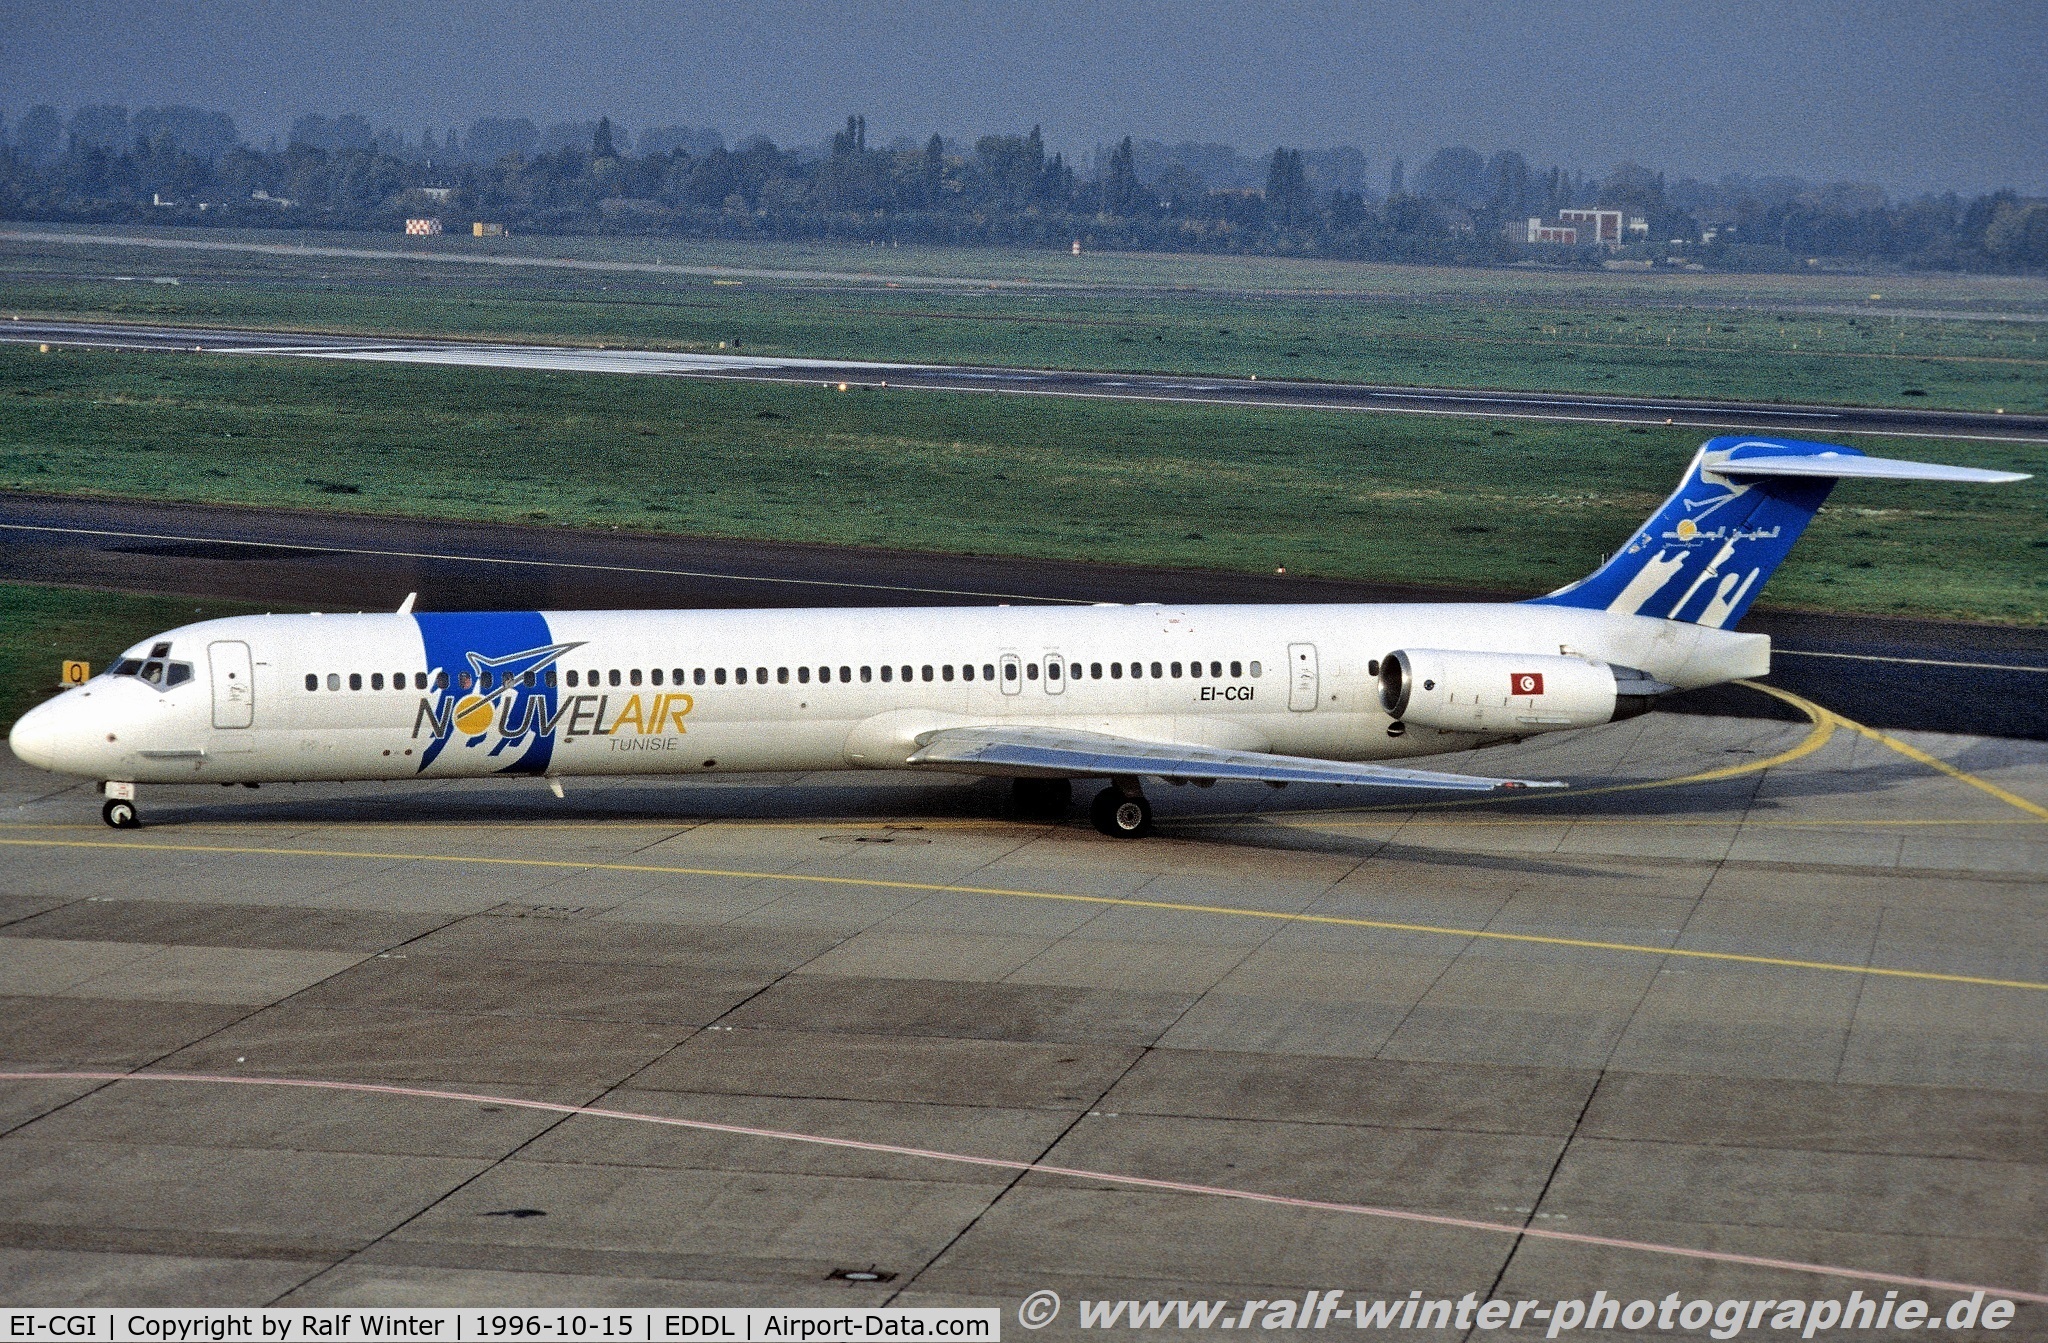 EI-CGI, 1988 McDonnell Douglas MD-83 (DC-9-83) C/N 49624, McDonnell Douglas MD-83 DC-9-83 - BJ LBT Nouvelair - 49624 - EI-CGI - 15.10.1996 - DUS